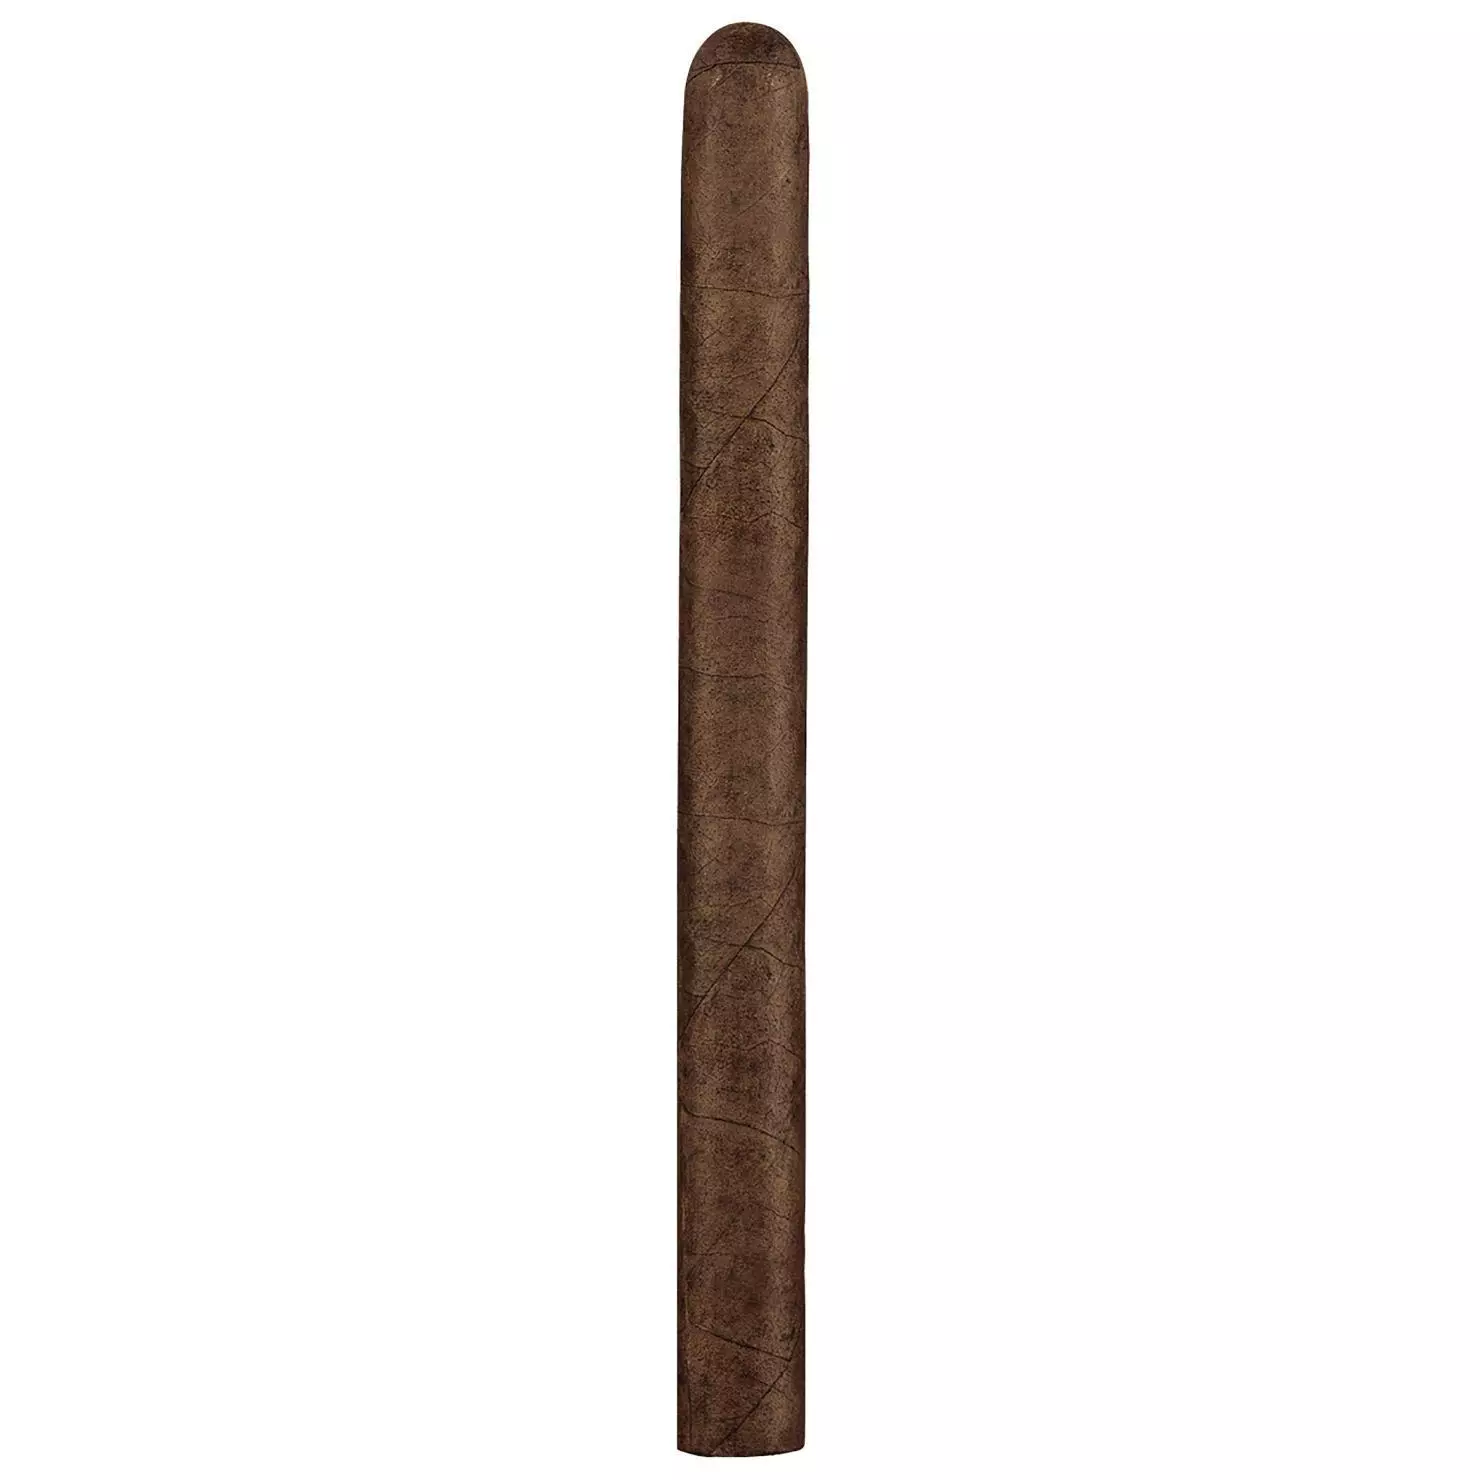 Tobajara Delgado Corona Filler Zigarren